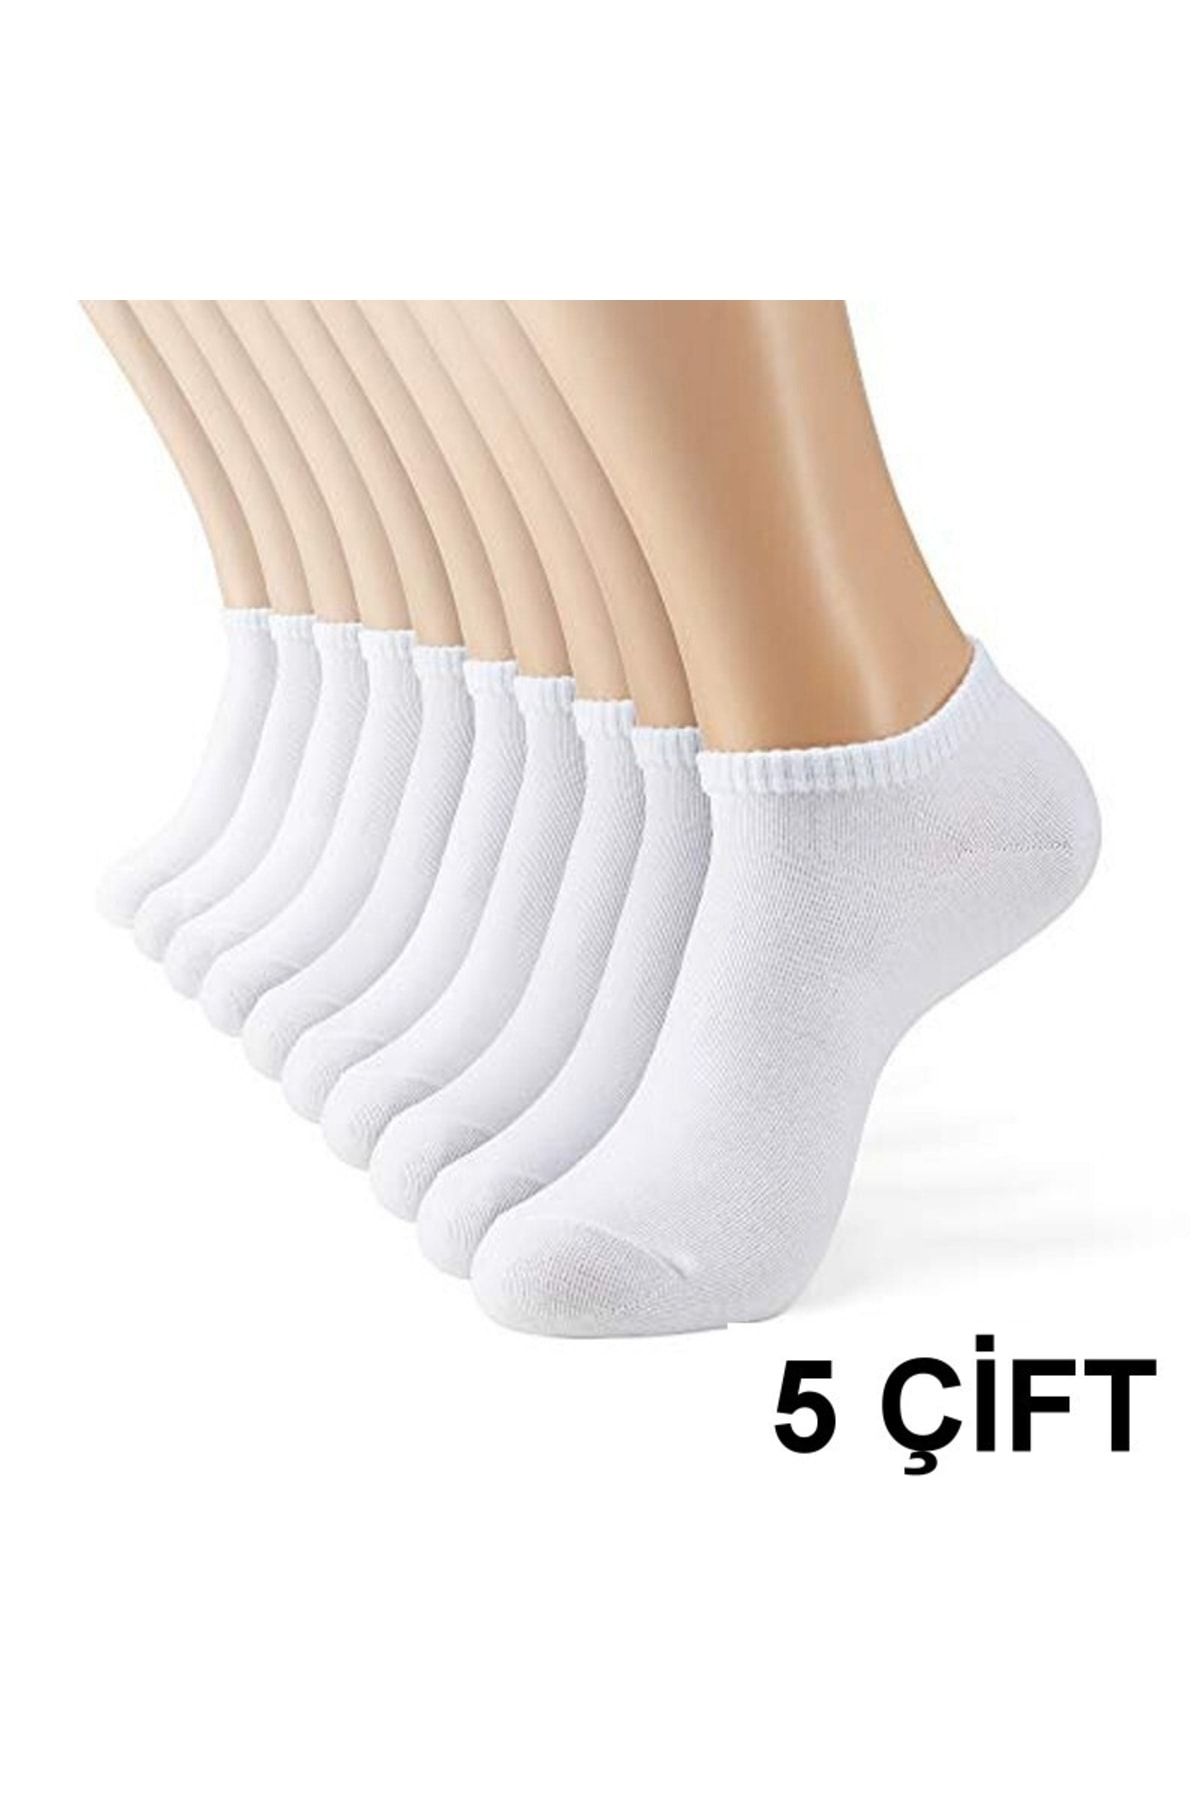 çorapmanya 5 Çift Koton Ekonomik Kadın Patik Çorap